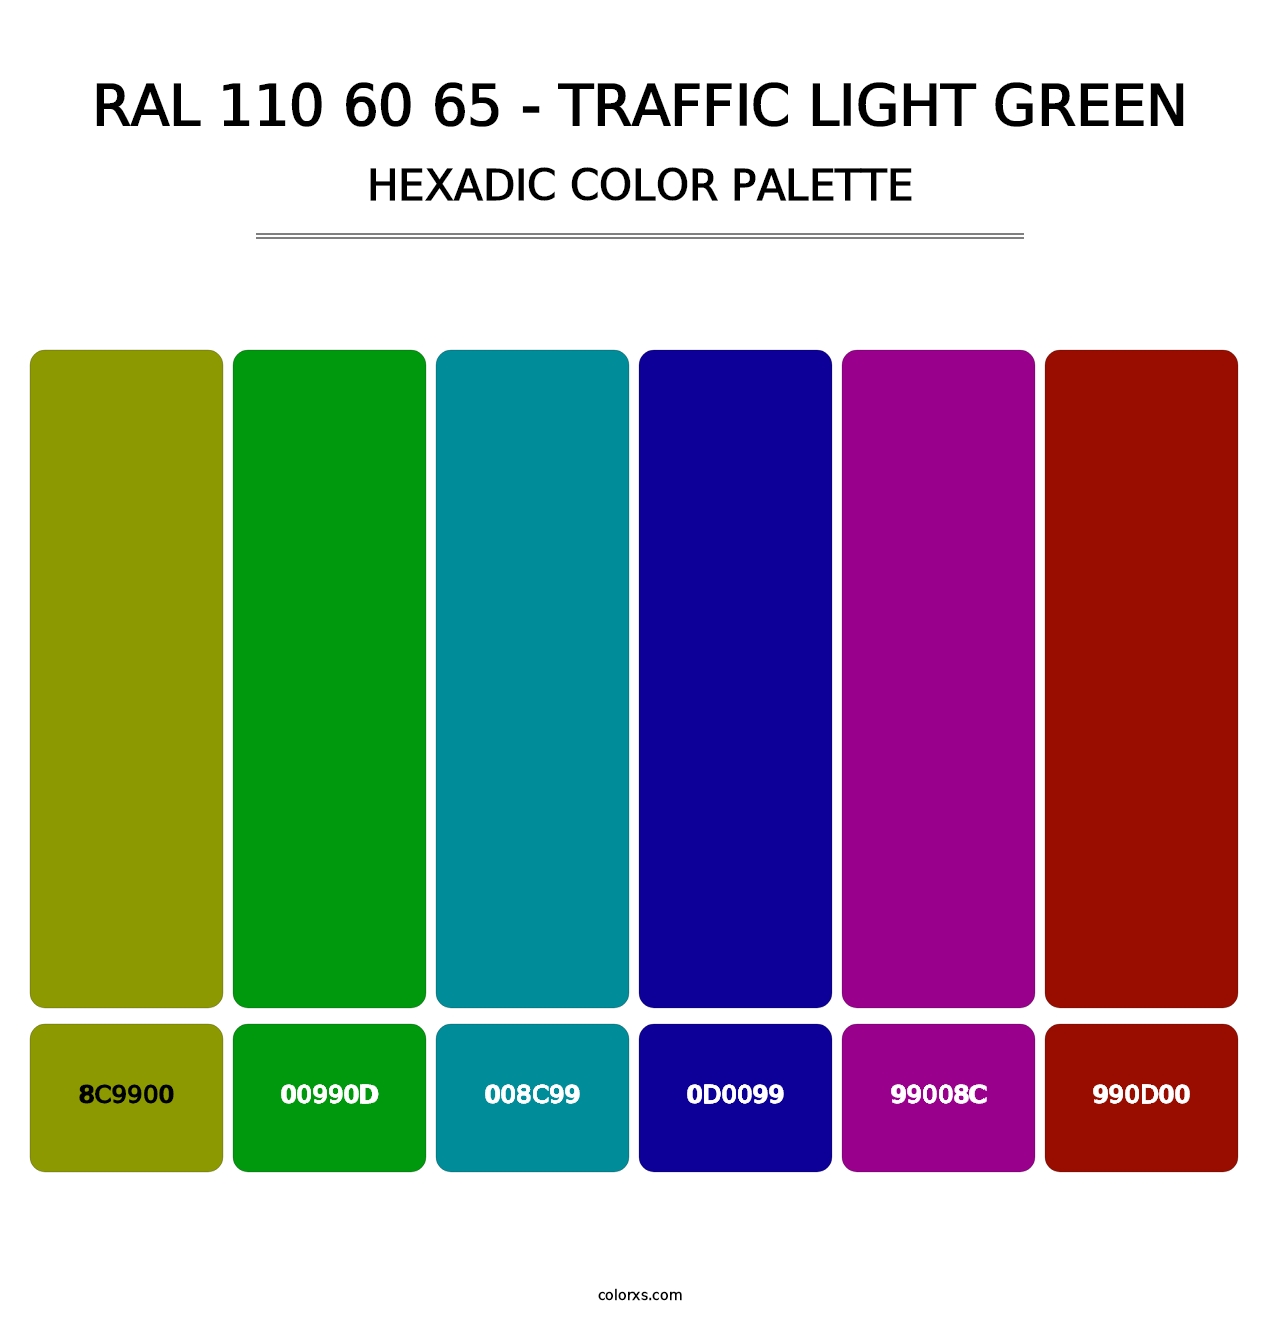 RAL 110 60 65 - Traffic Light Green - Hexadic Color Palette